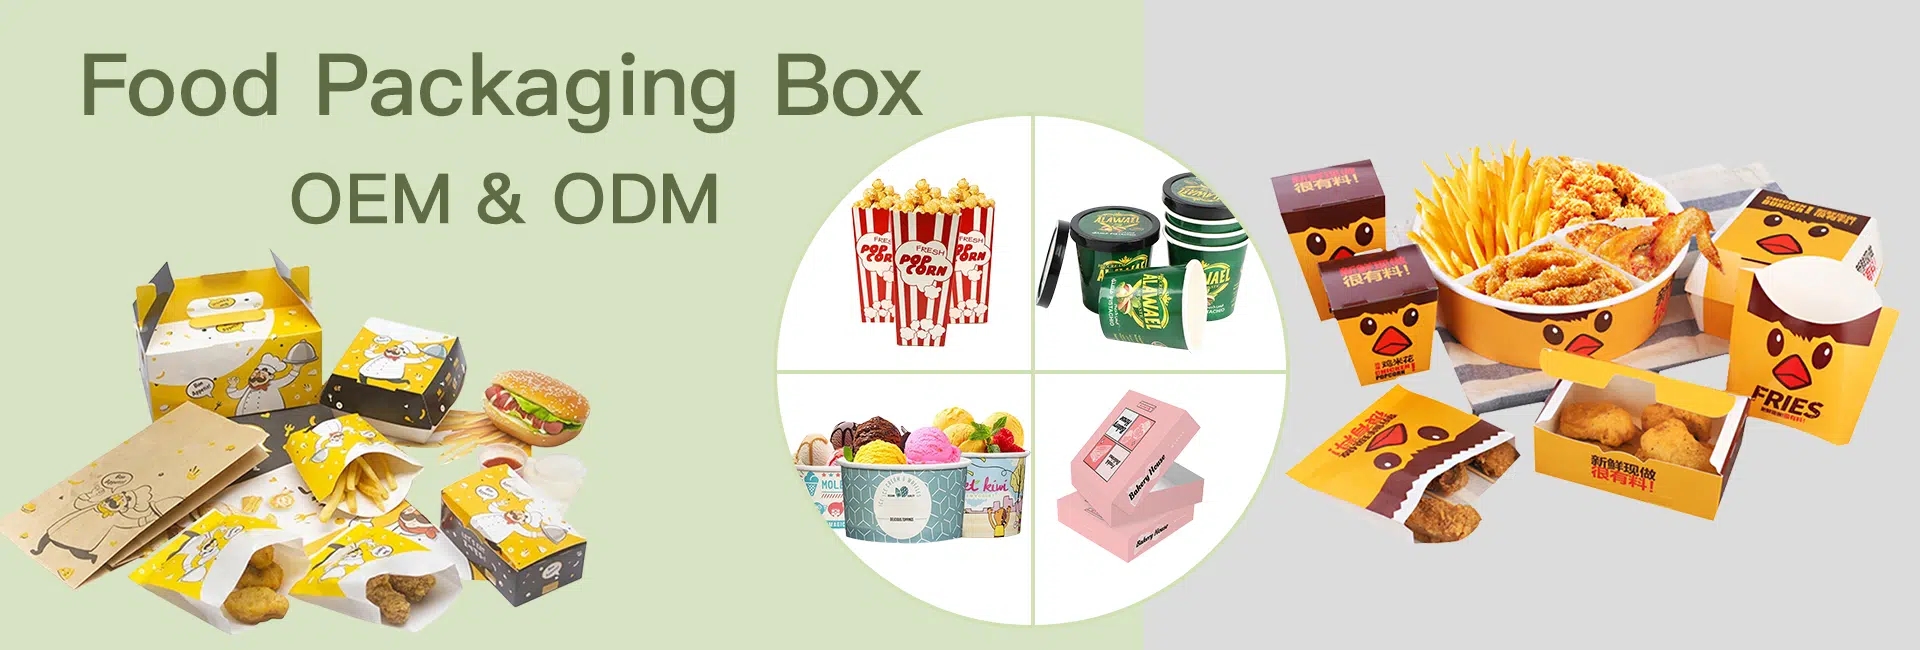 food-packaging-box-1.jpg.webp